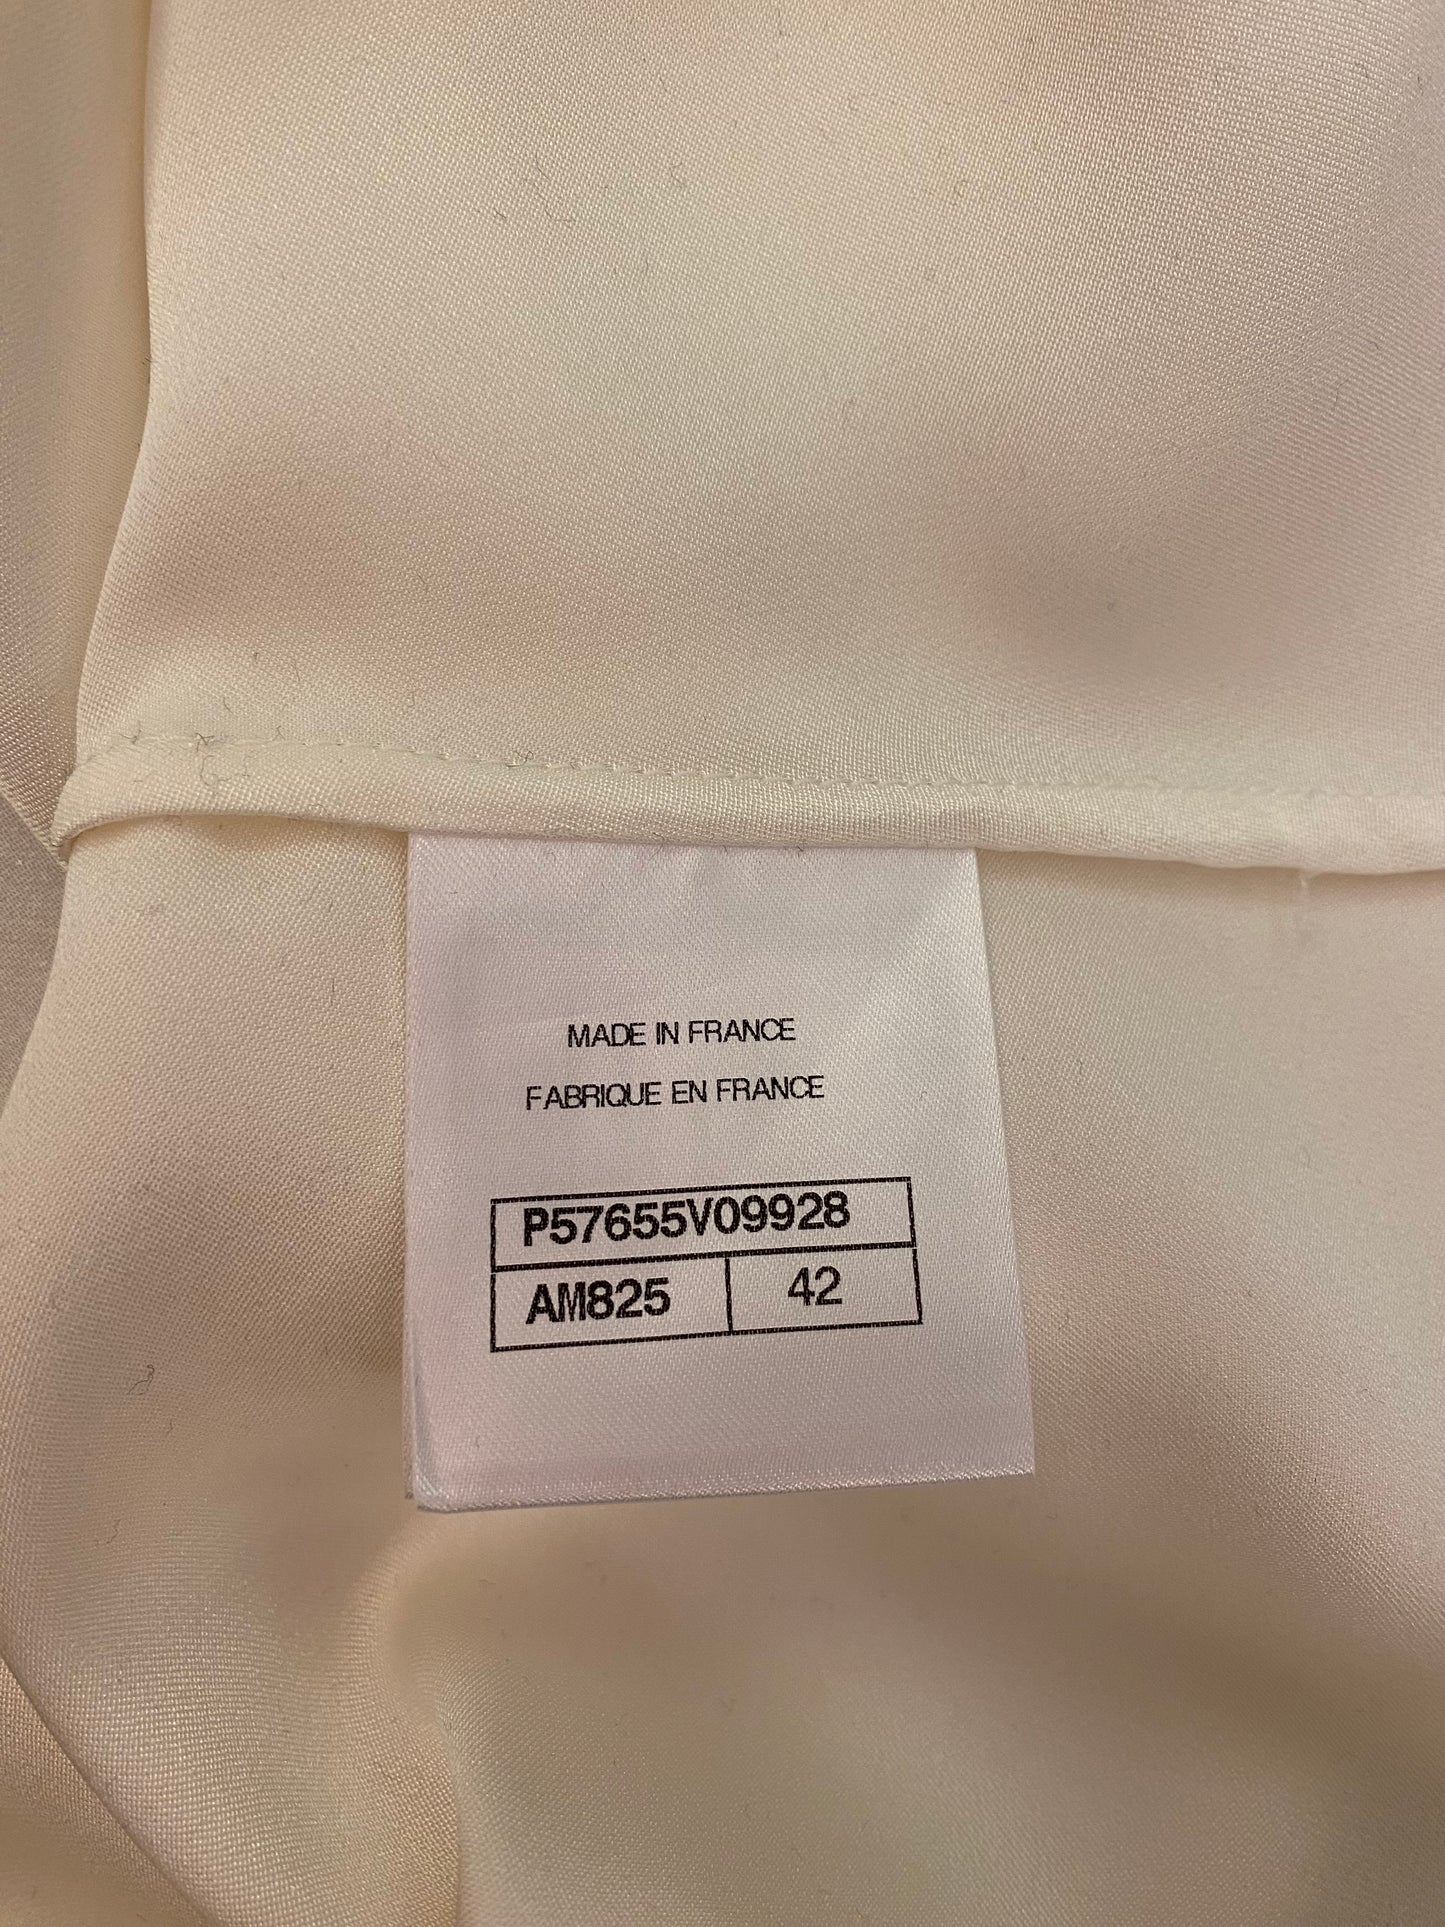 CHANEL Off-White Silk Blouse Size Fr 42 Eu 38